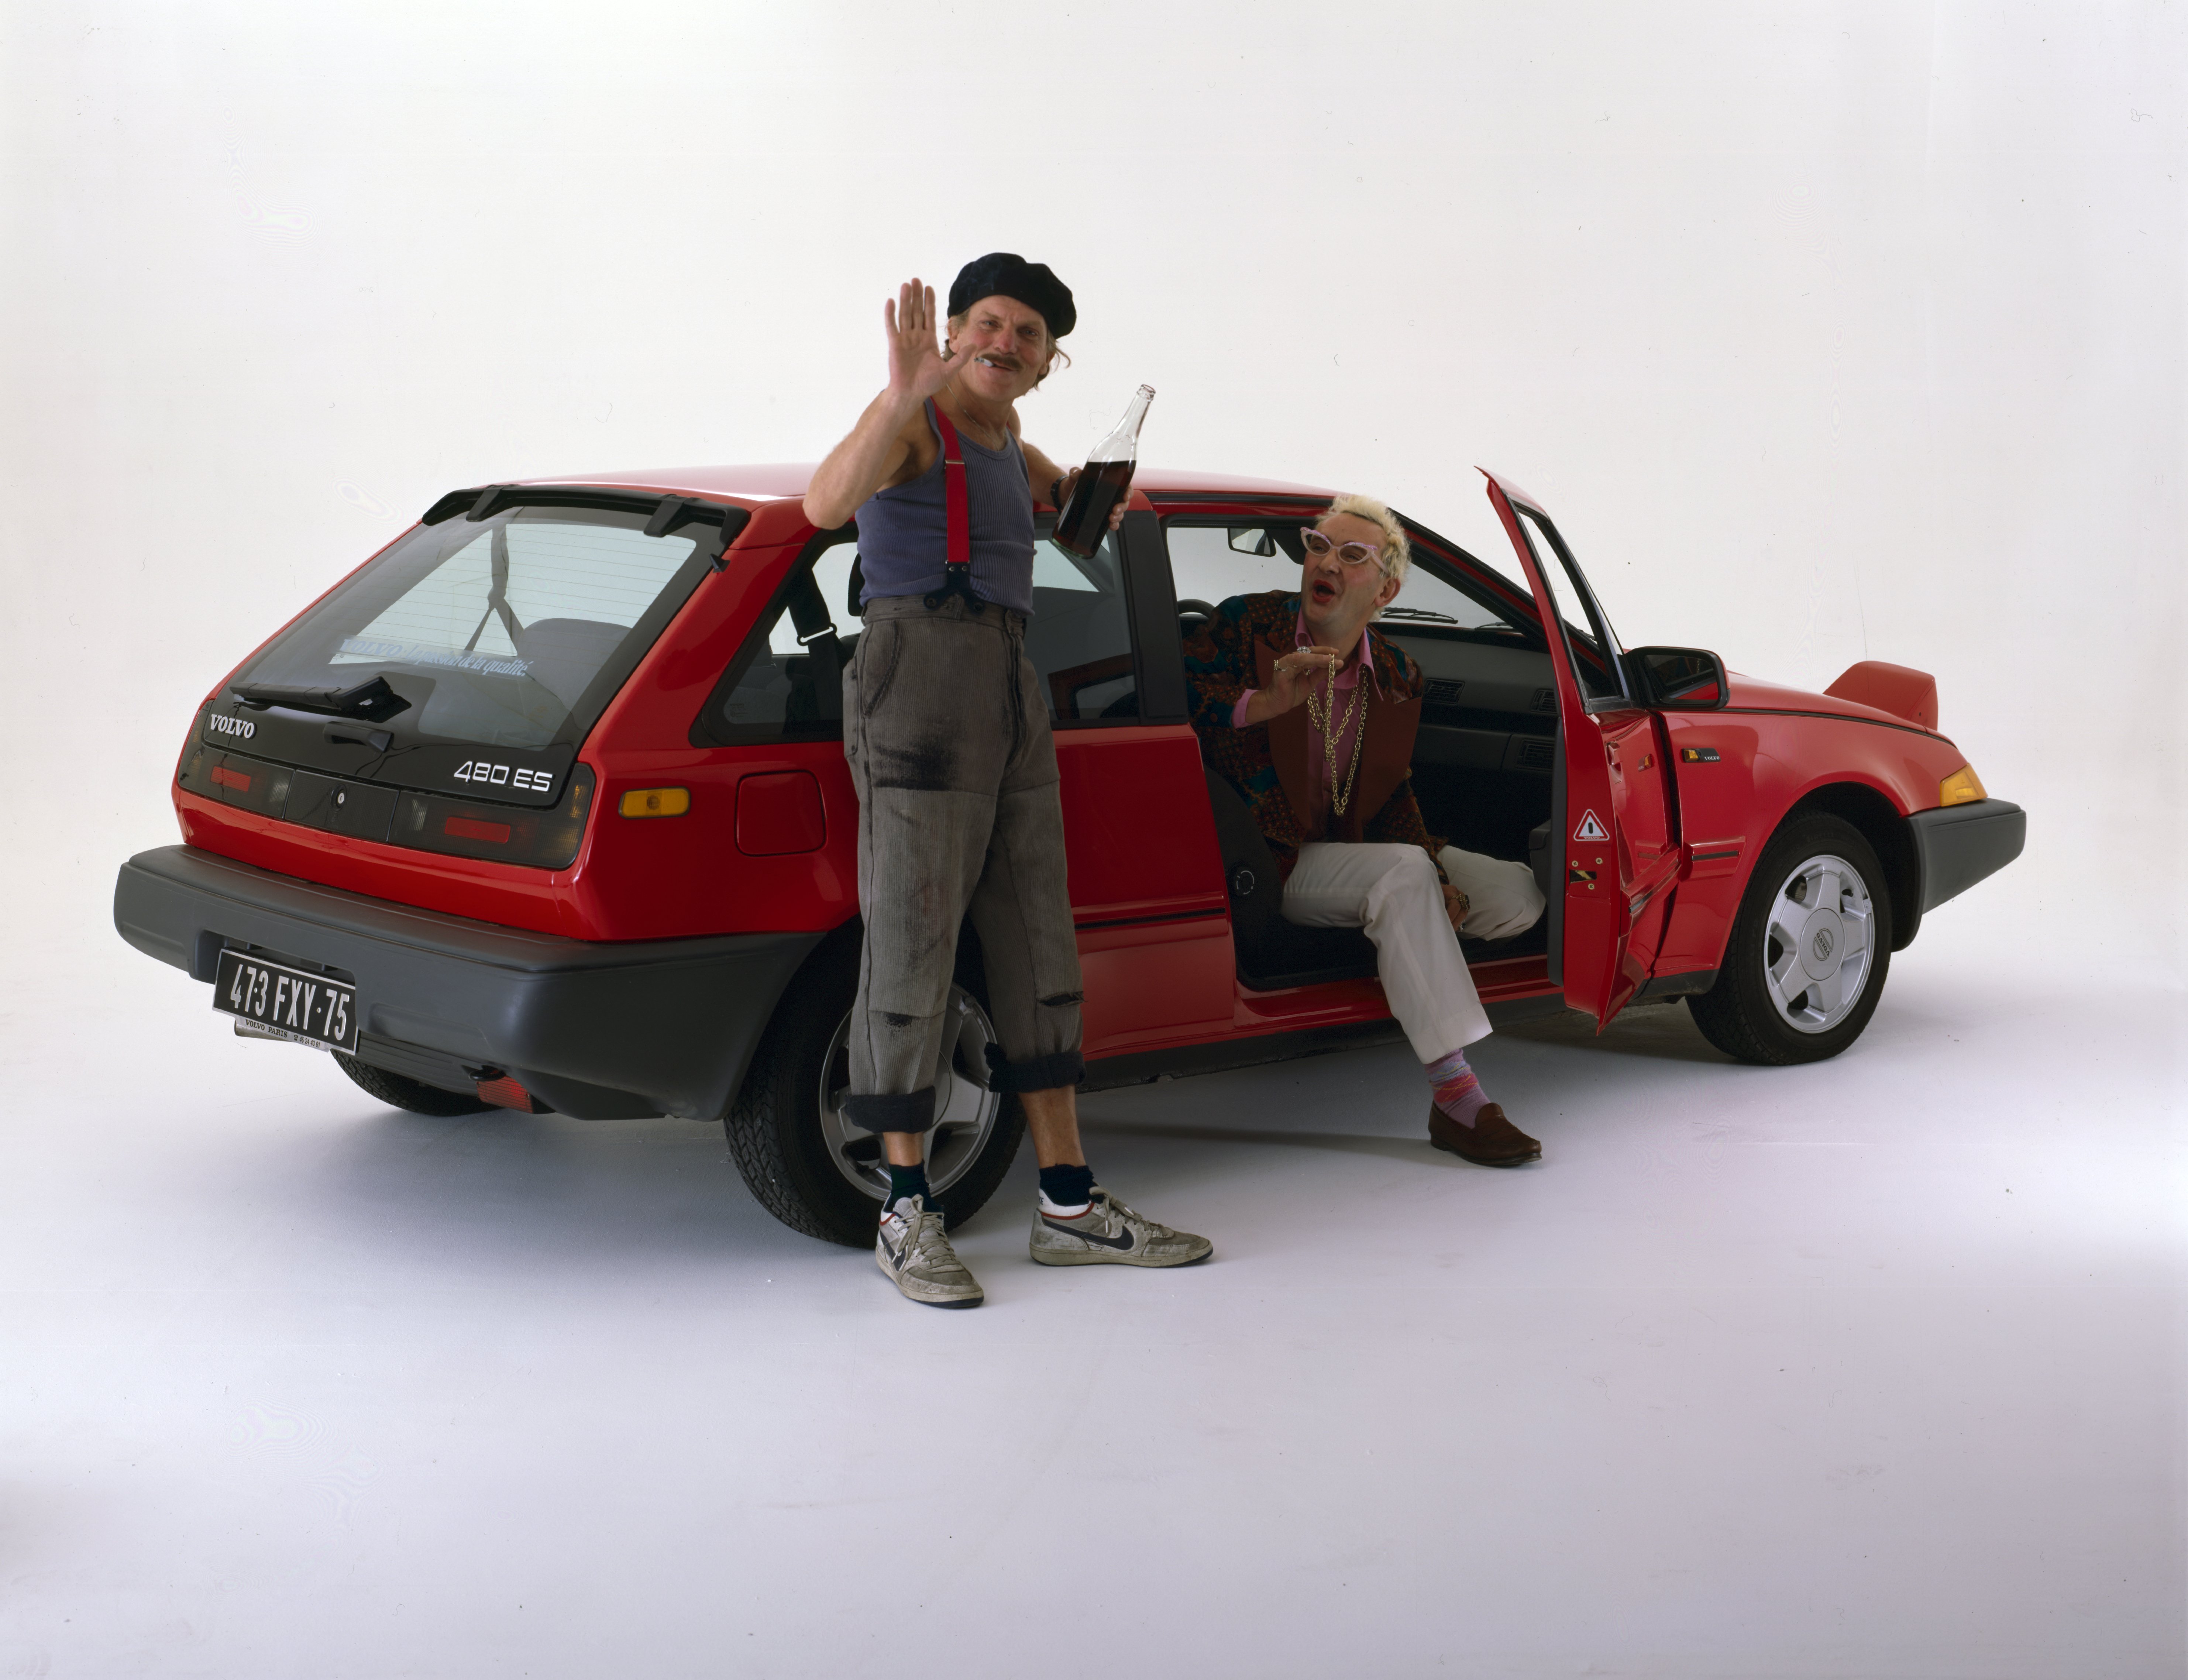 En France, en octobre 1986, à l'occasion du salon de l'auto, les membres de l'émission COCORICOCOBOY, posant avec la voiture VOLVO 480 ES, le personnage de Pignard, un français moyen, et Rita BRANTALOU, acteur, chanteur, en Michou Bidou, en studio. | Photo : Getty Images